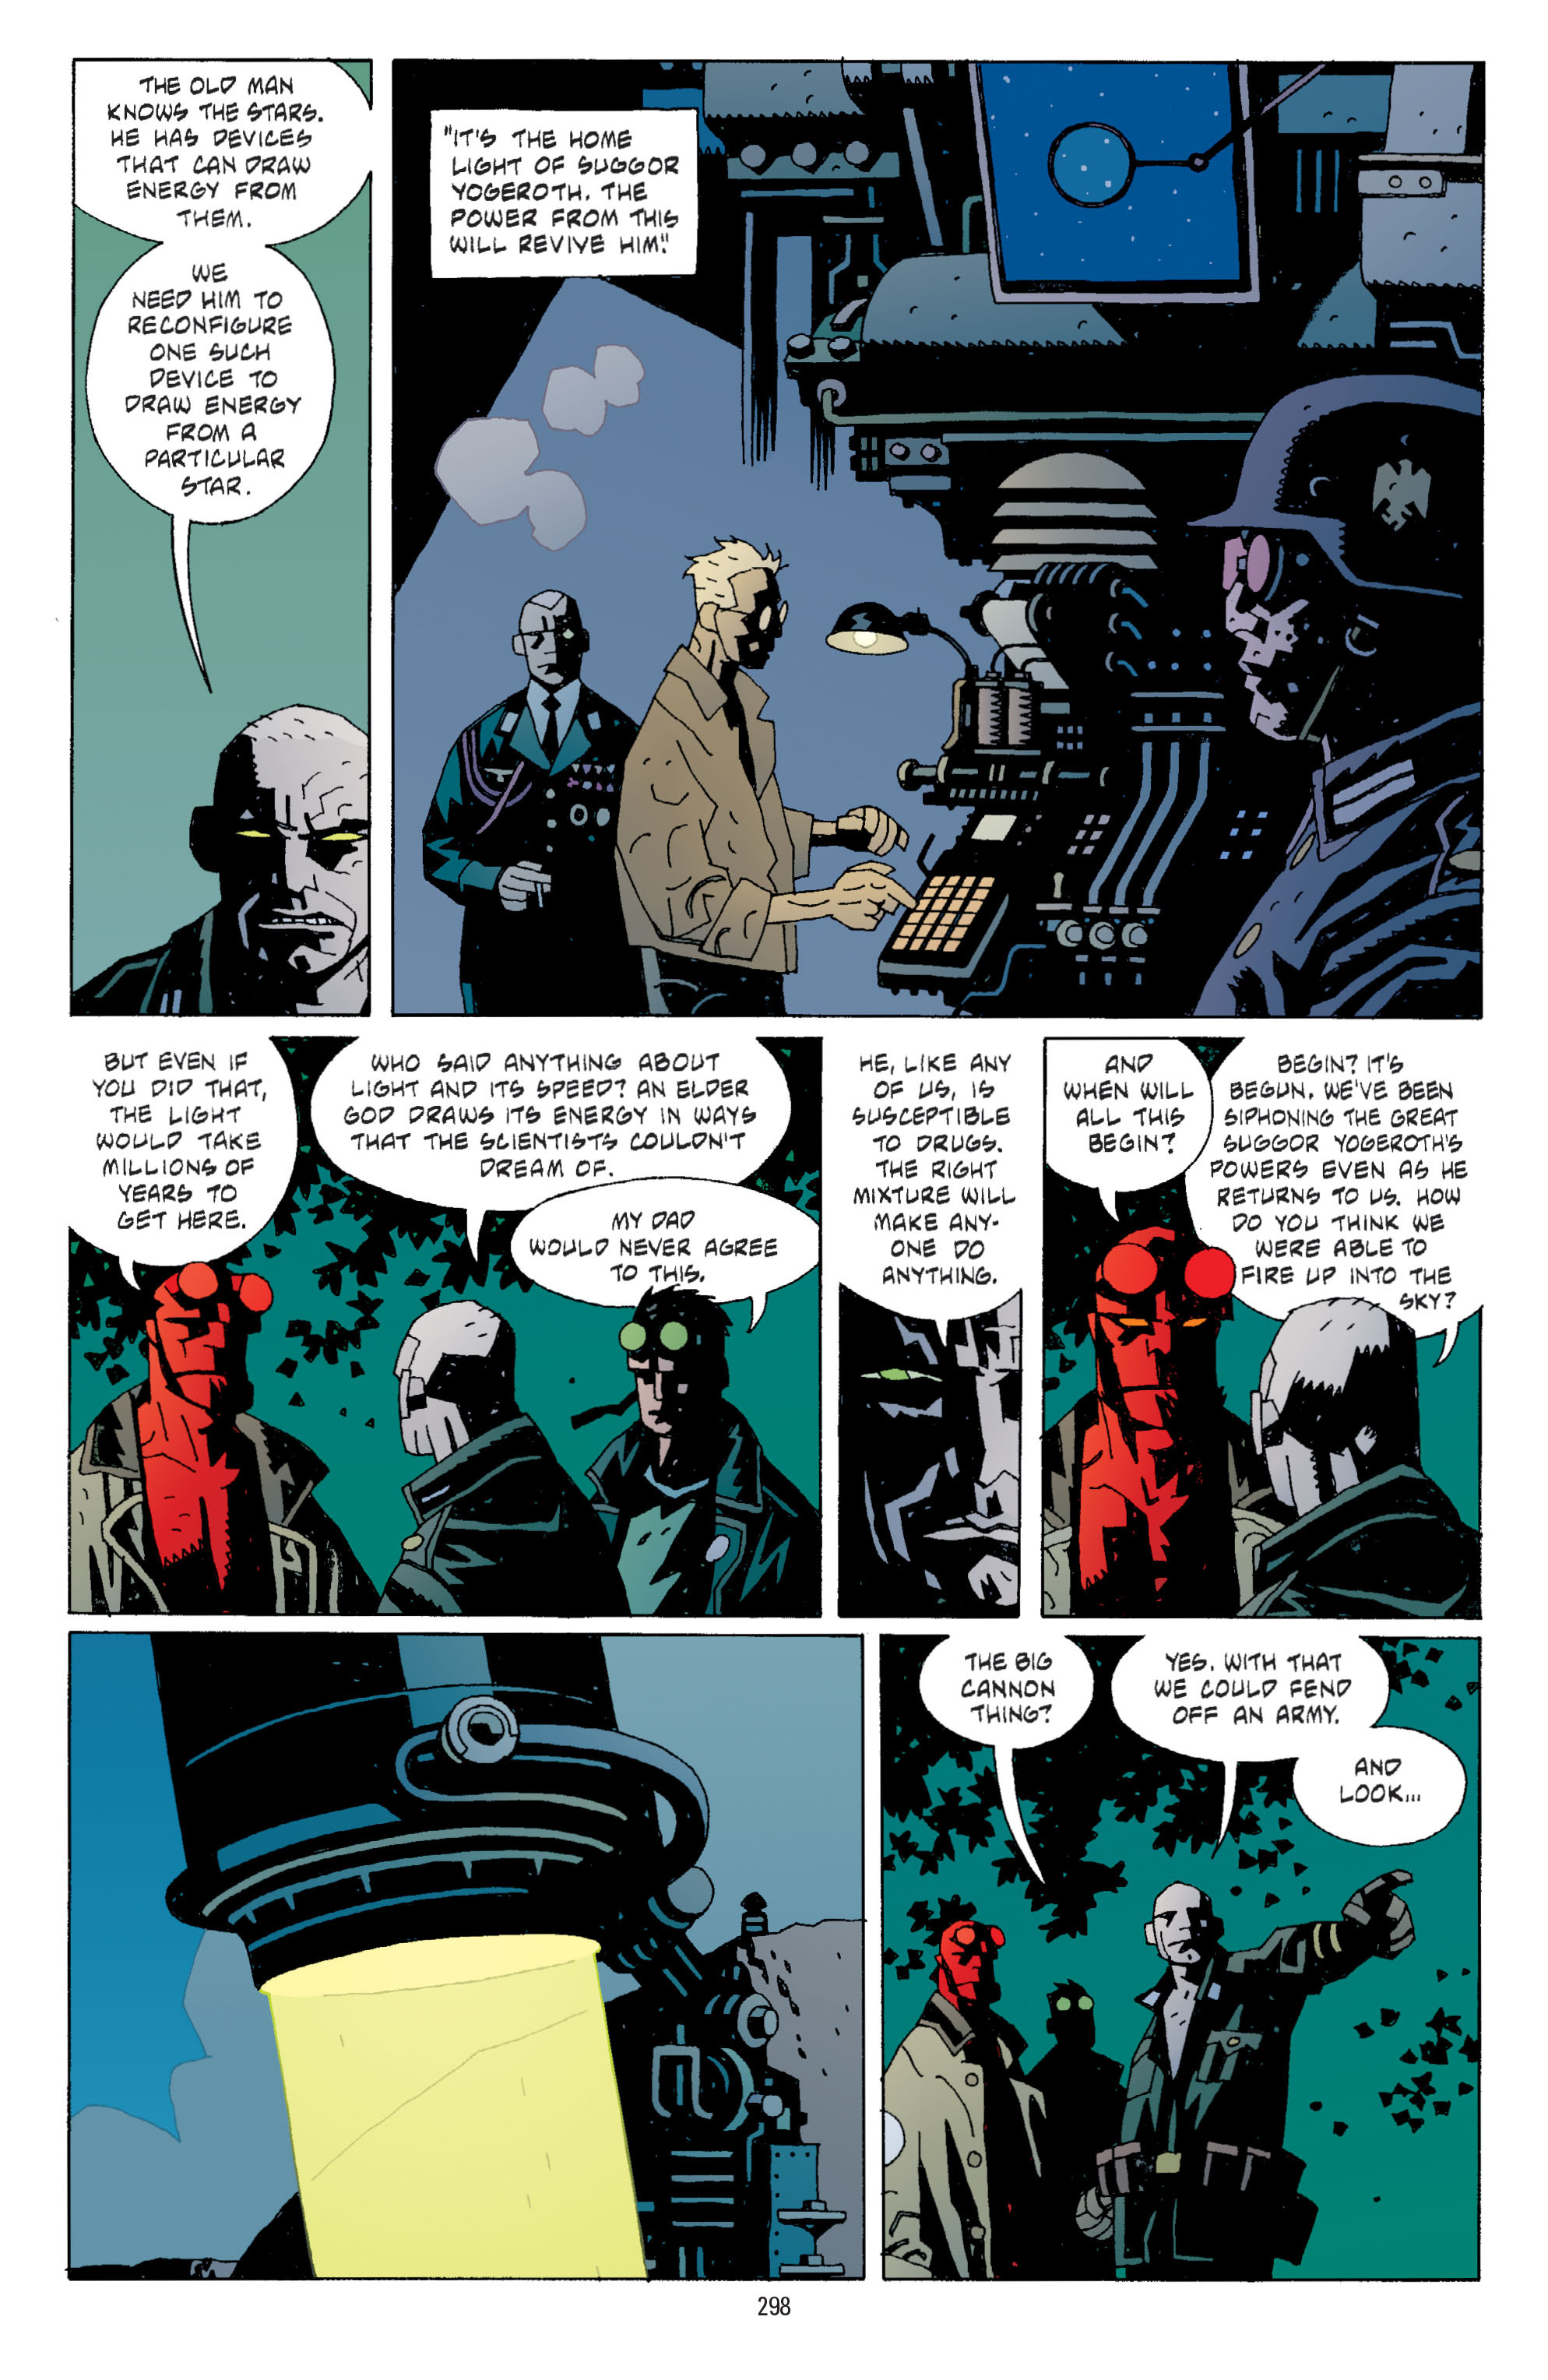 DC Comics/Dark Horse Comics: Justice League Full #1 - English 289